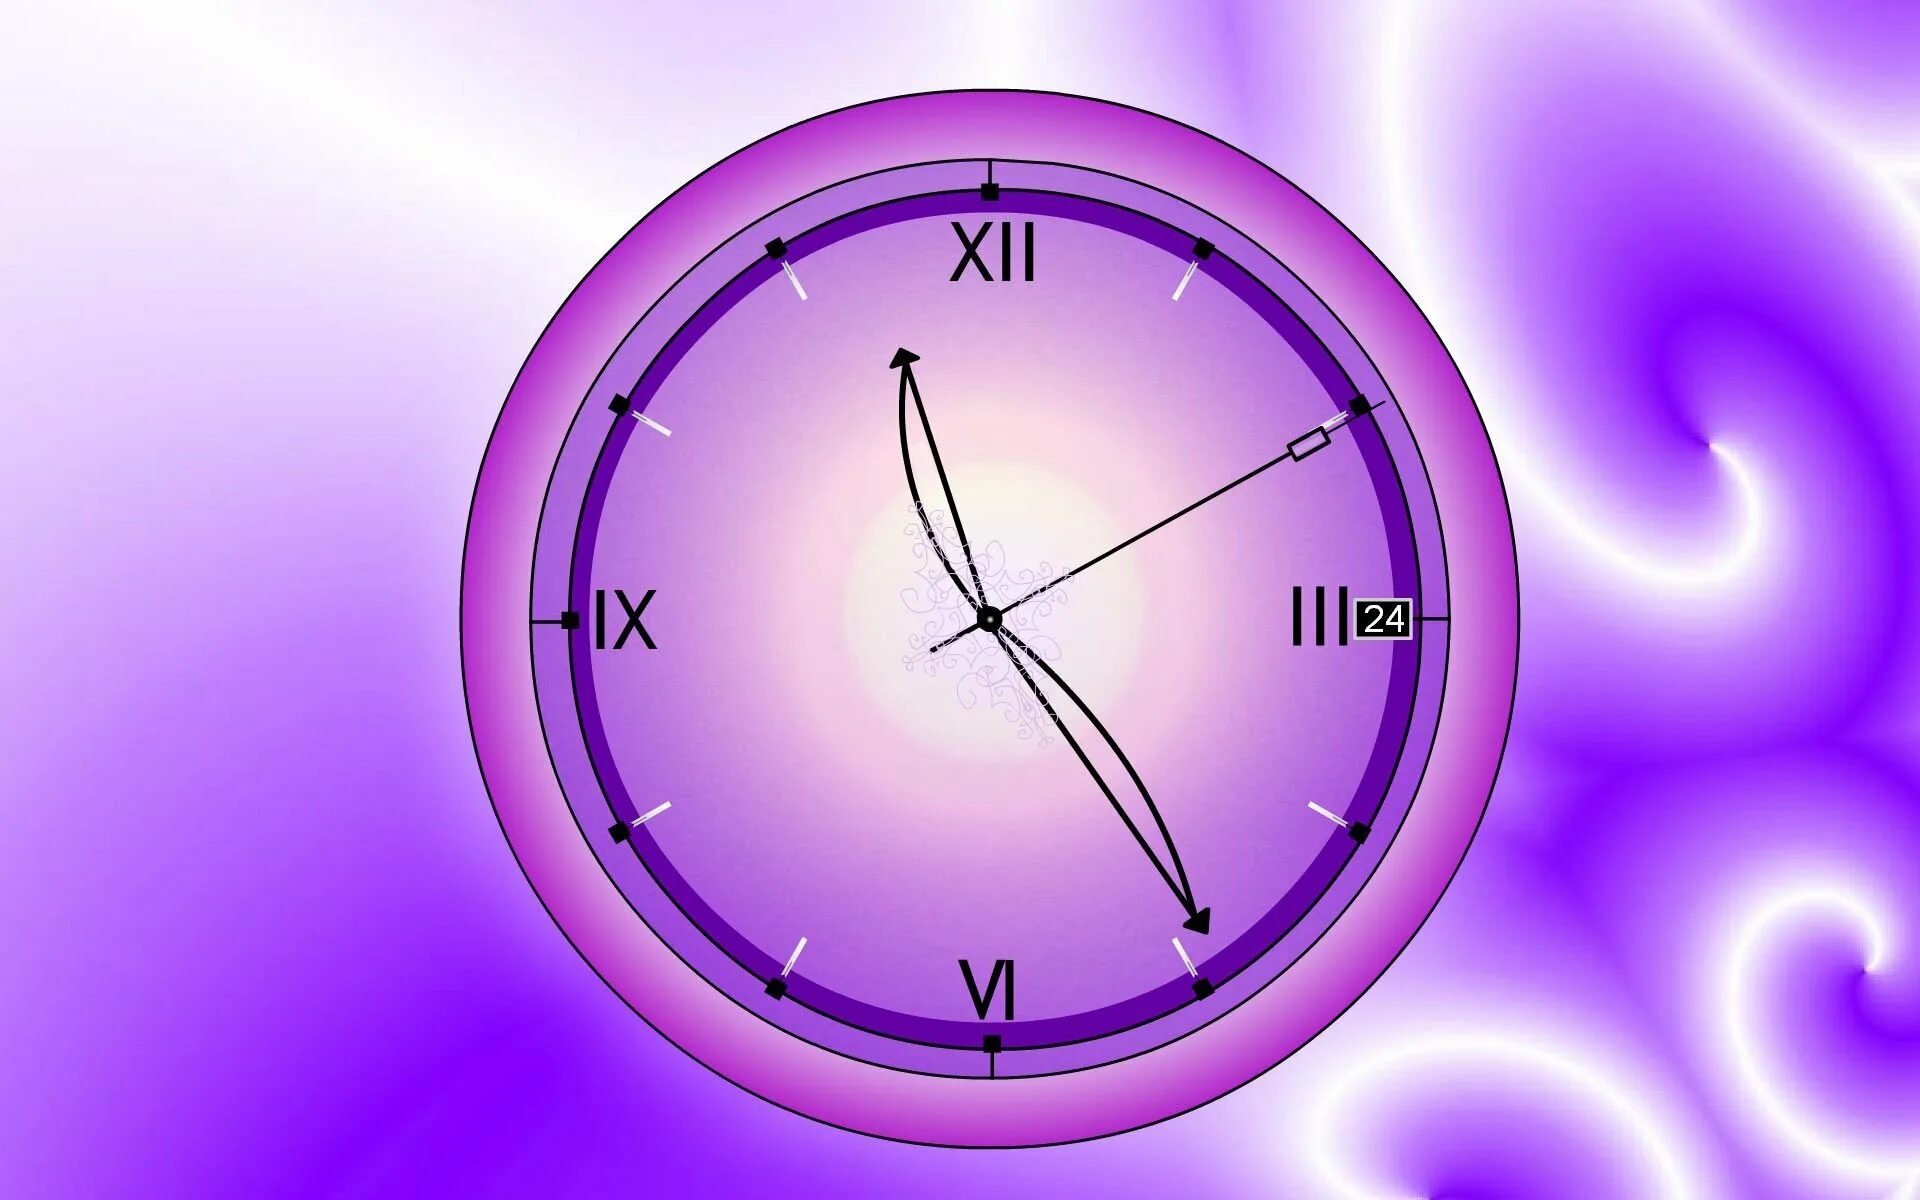 Бесплатная заставка часов. Заставка часы. Часы на фиолетовом фоне. Живые обои часы. Настенные часы на фиолетовом фоне.